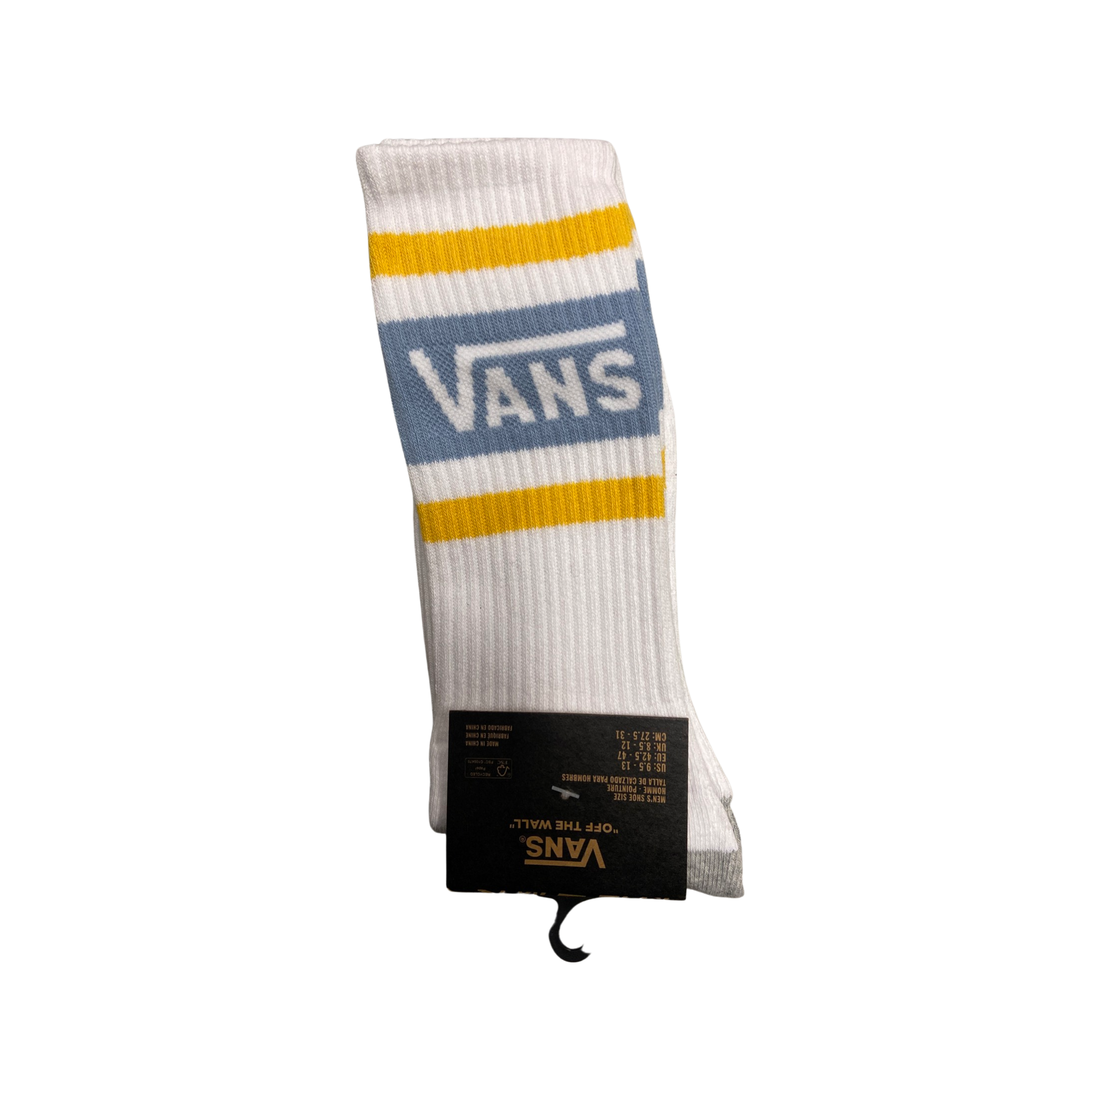 Vans Socks Assorted Styles 9.5-13